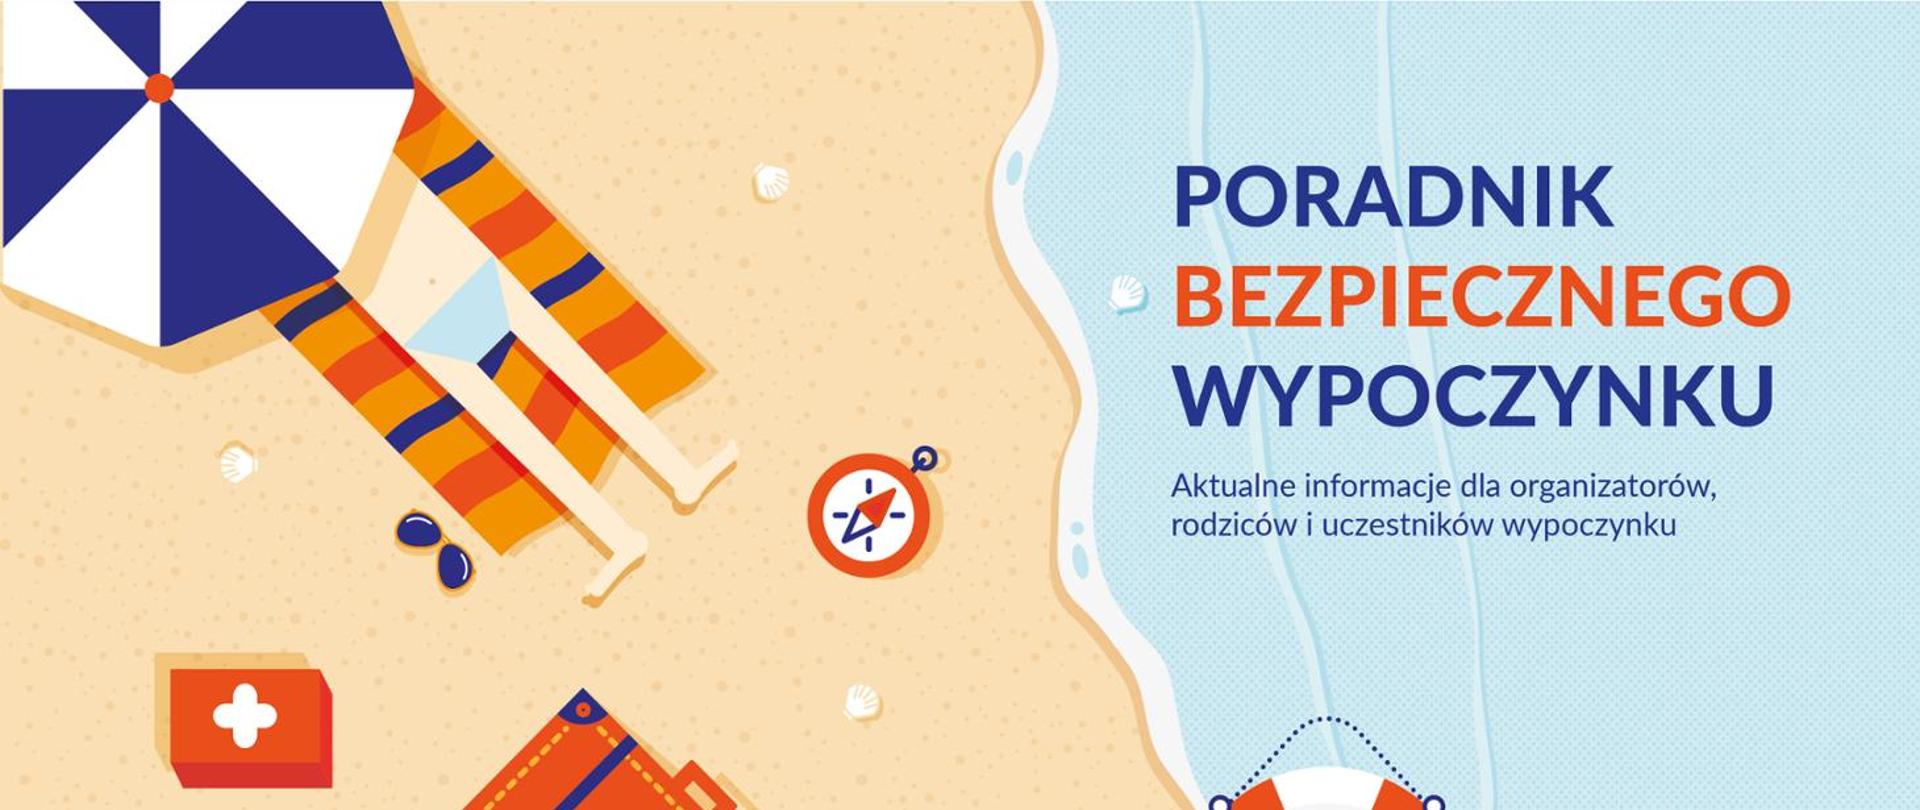 Kolorowa grafika z plażą i wodą oraz napisem "Poradnik bezpiecznego wypoczynku. Aktualne informacje dla organizatorów, rodziców i uczestników wypoczynku"